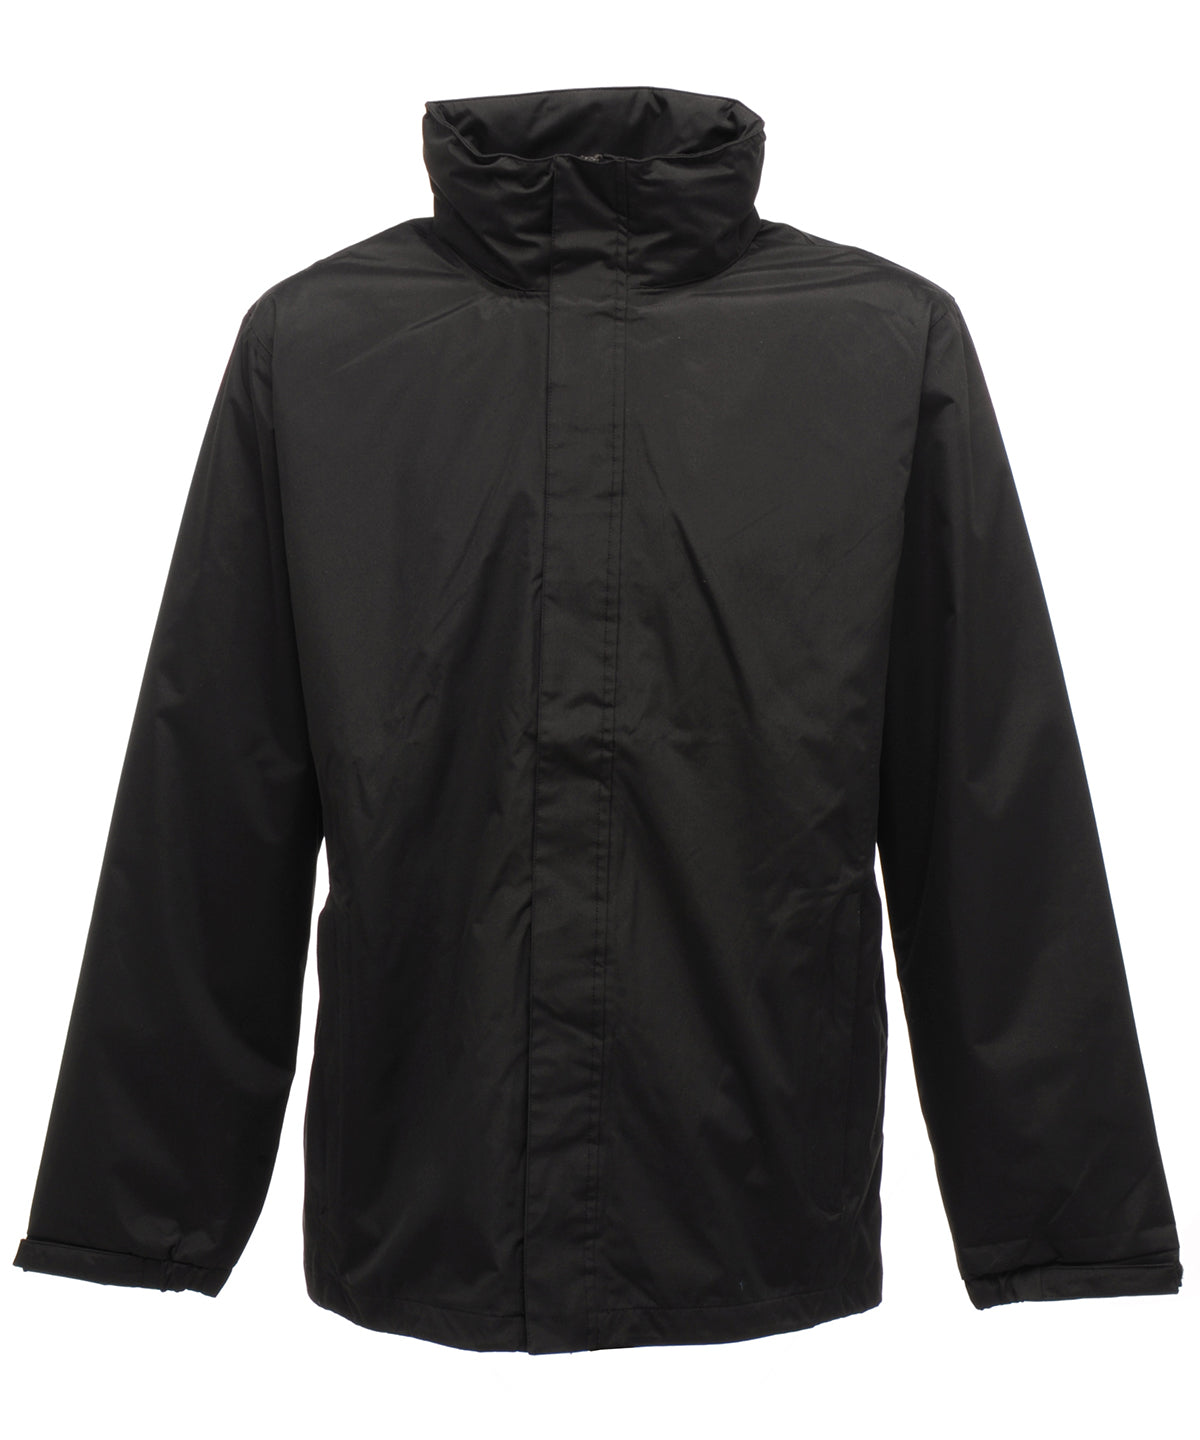 Jakkar - Ardmore Waterproof Shell Jacket